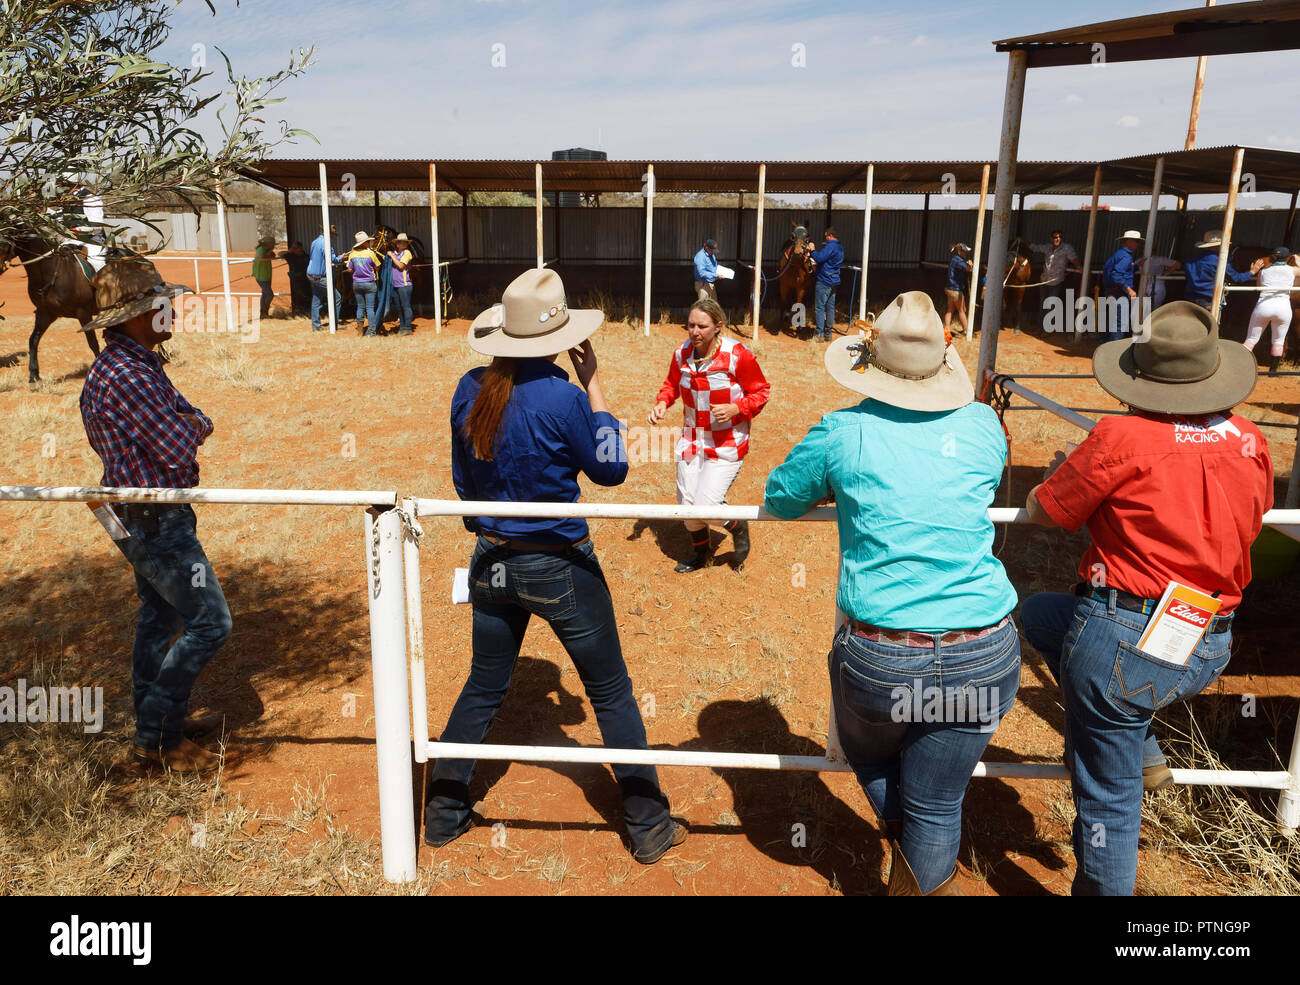 Spettatori guarda le gare di cavalli a Landor, 1000km a nord di Perth, Western Australia. Foto Stock